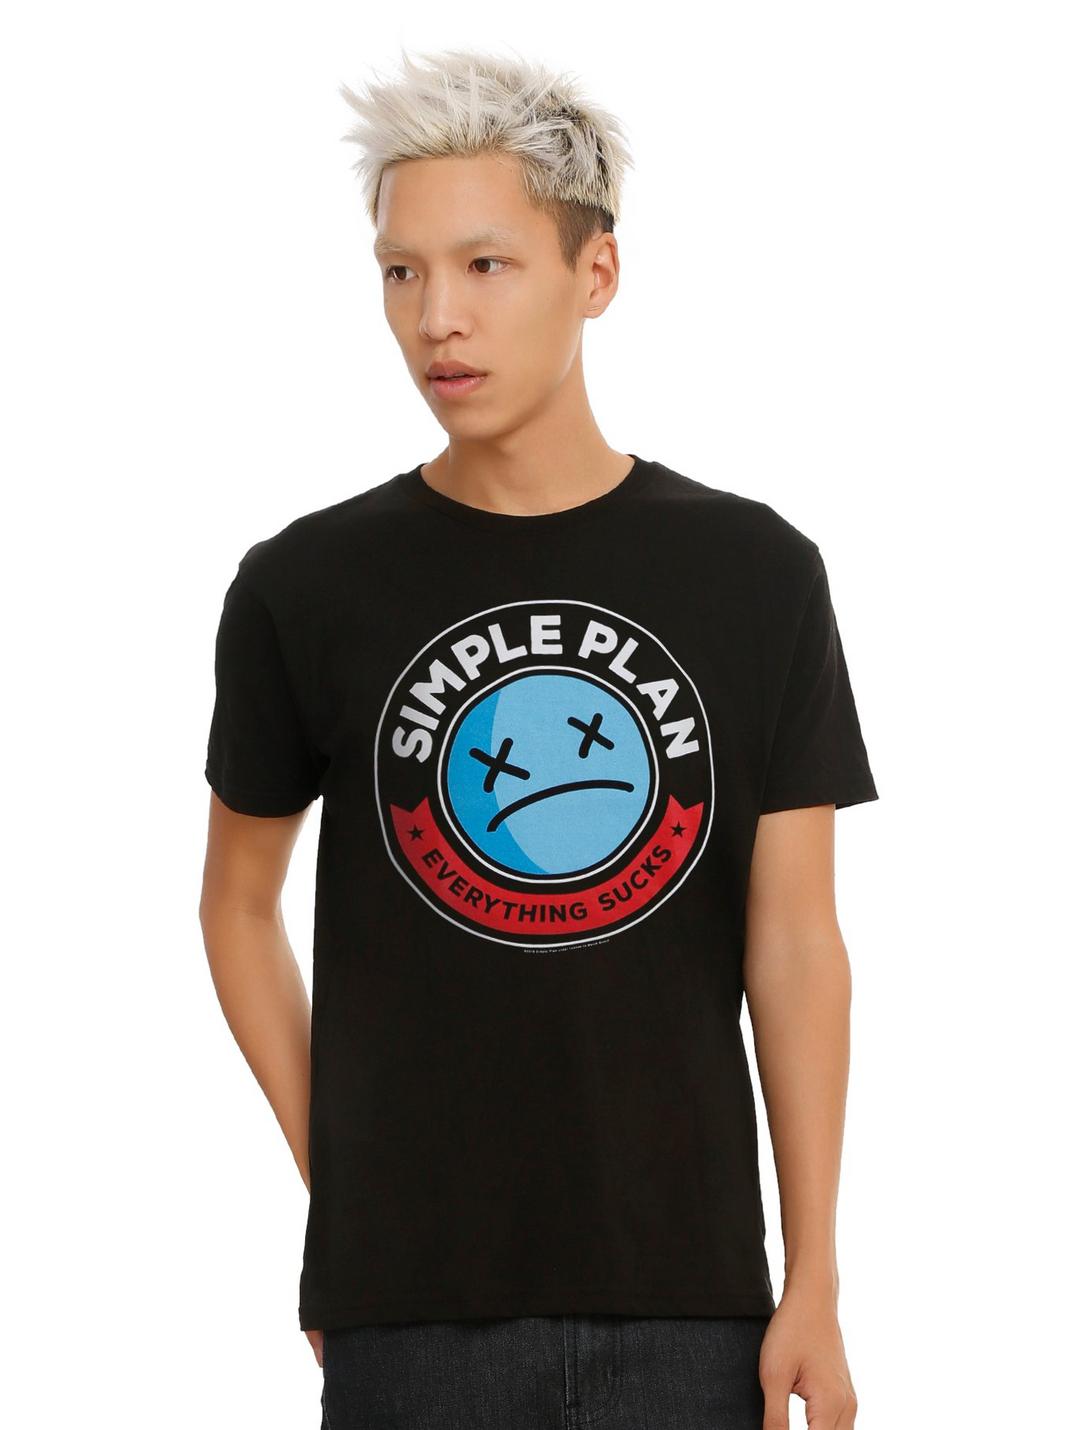 Simple Plan Everything Sucks T-Shirt, BLACK, hi-res